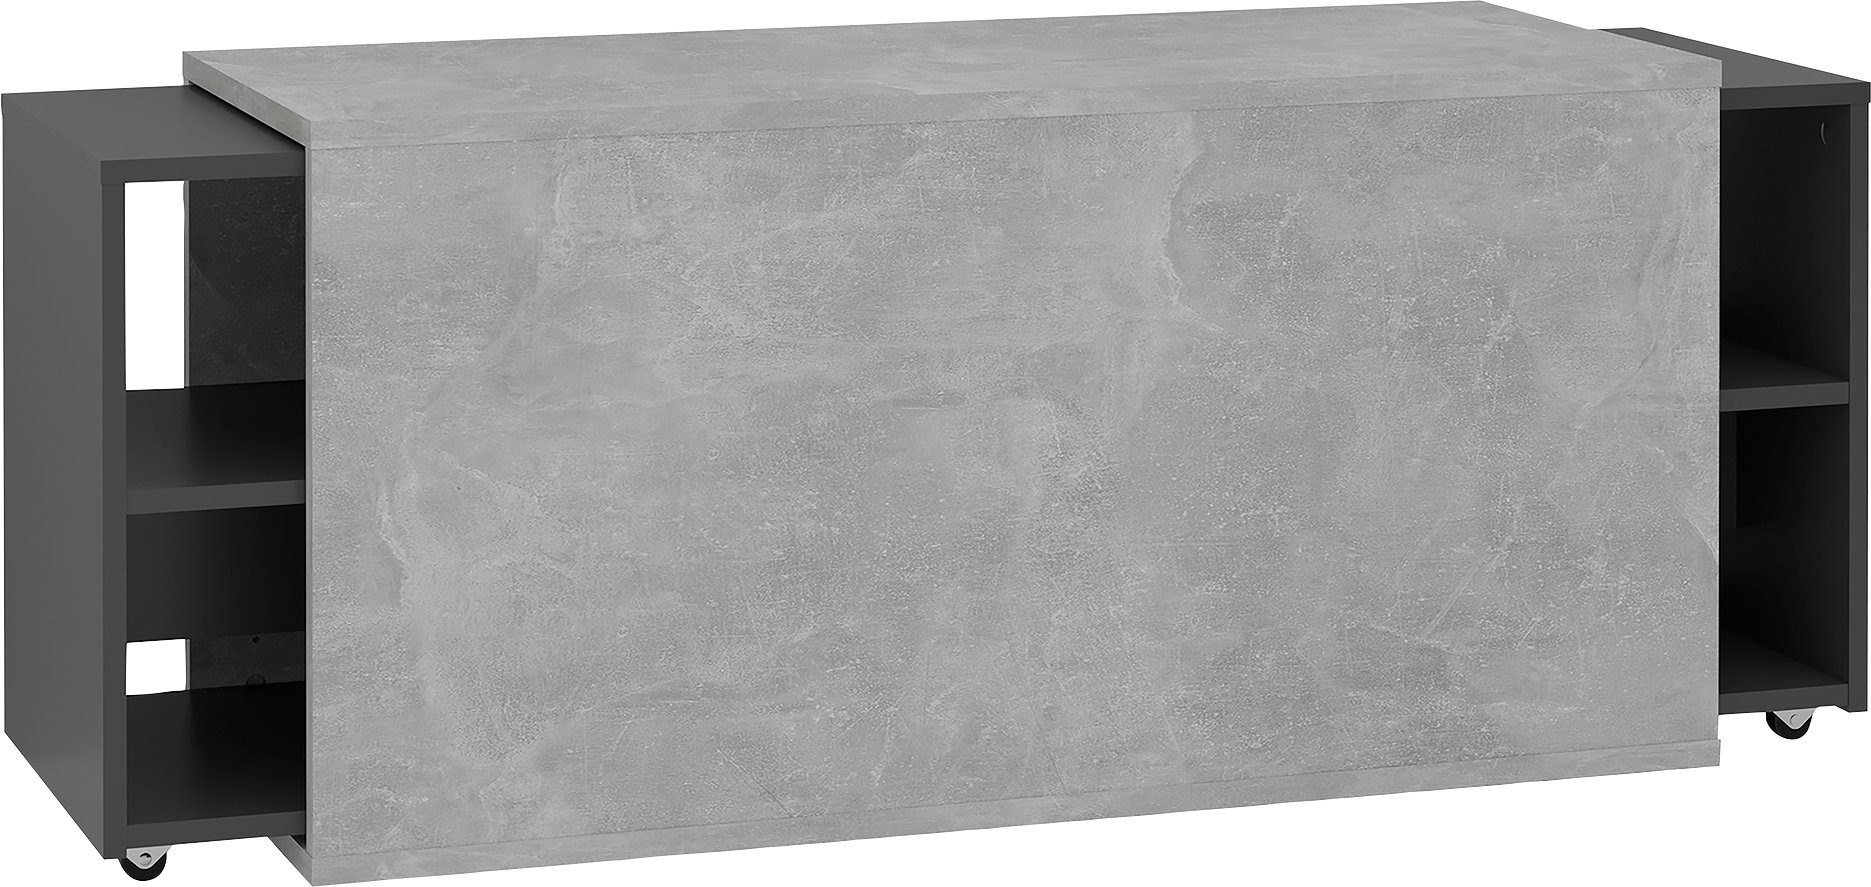 FMD TV-Board Slide, ausziehbar auf 194,5 cm Beton LA / anthrazit | Beton LA / anthrazit